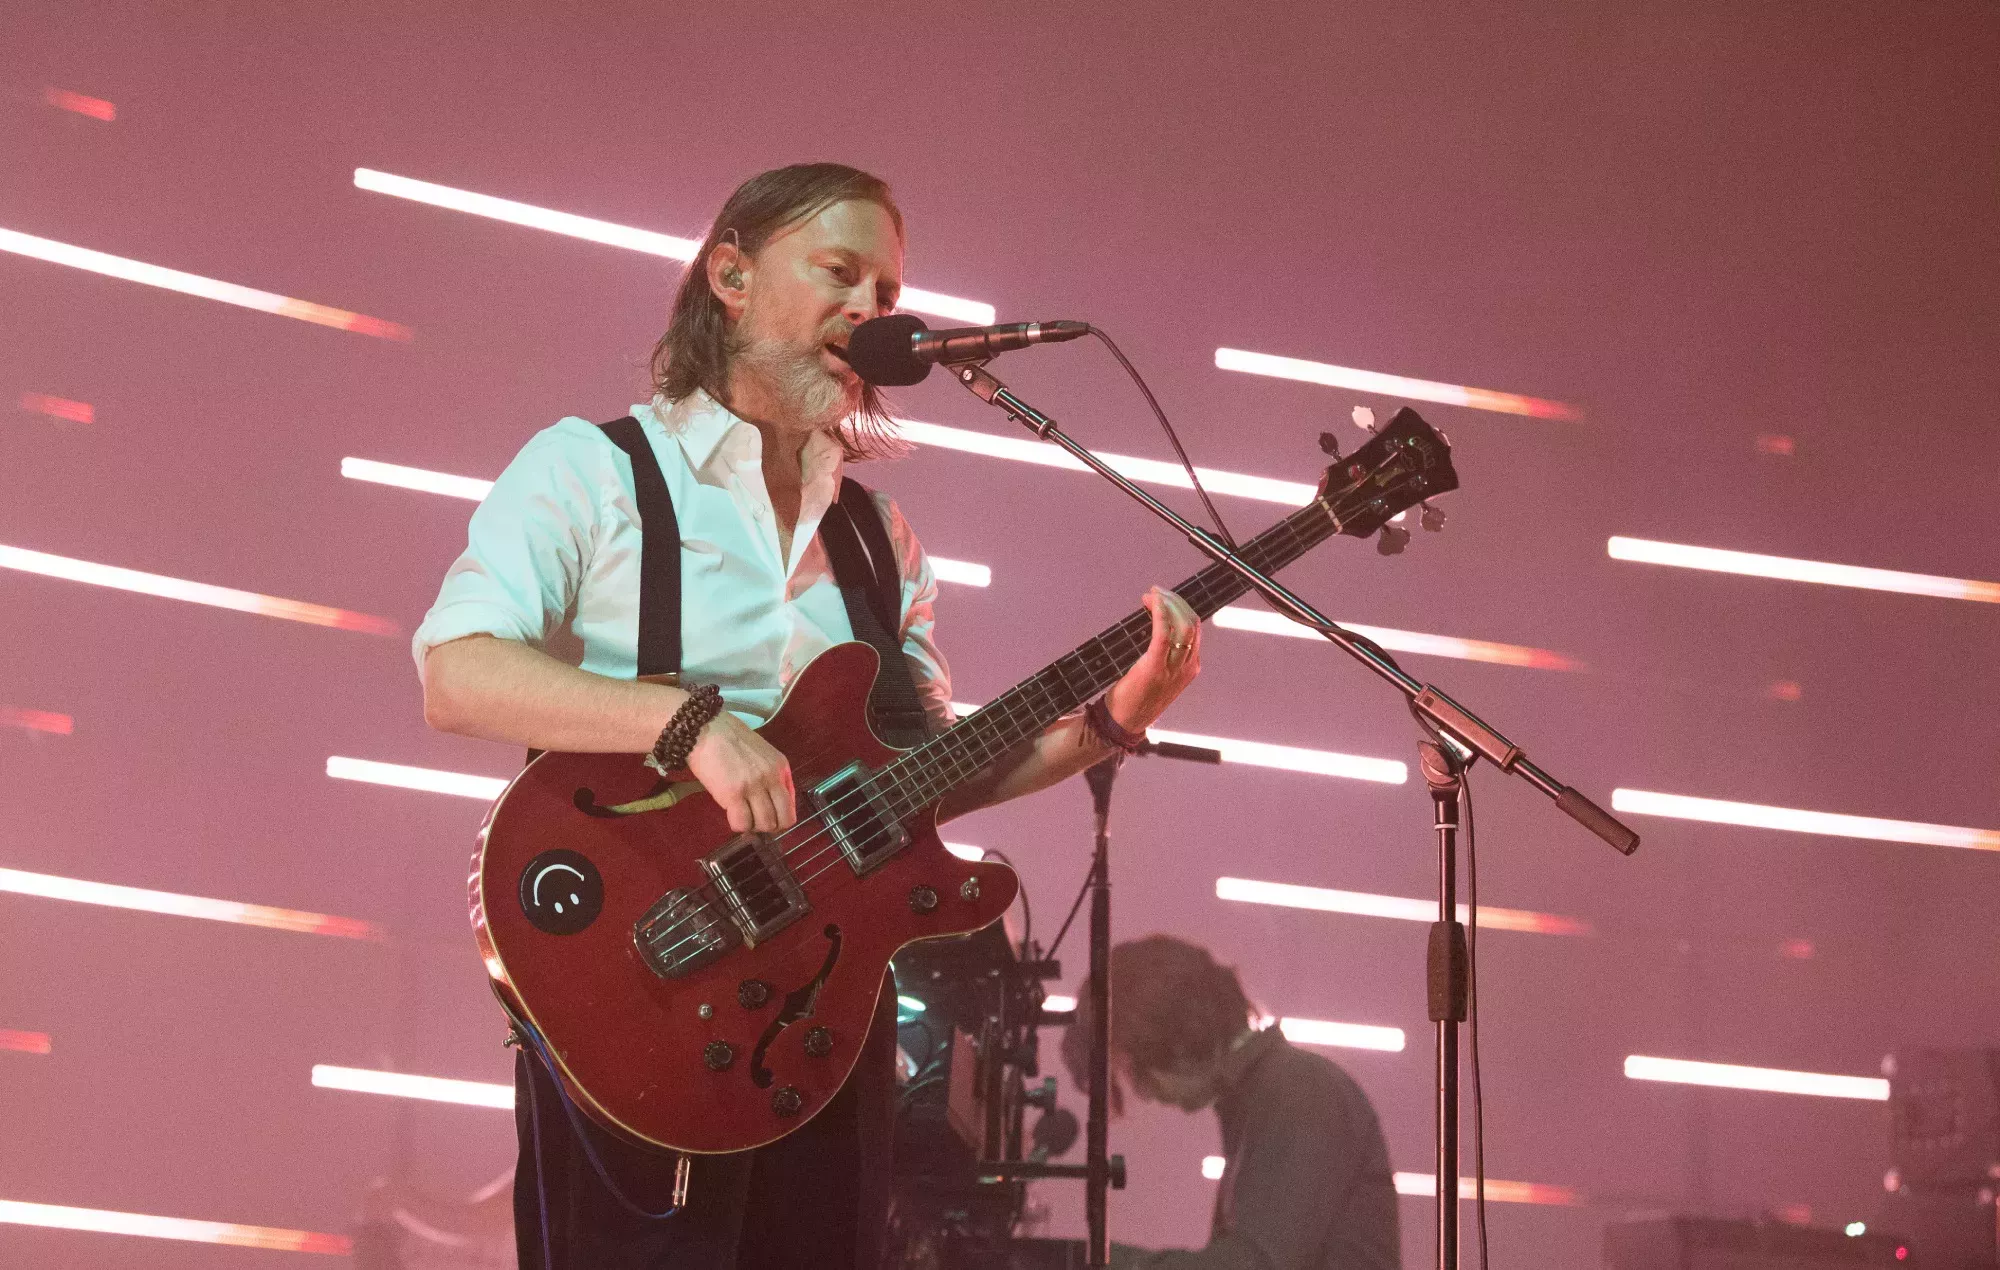 Paul Thomas Anderson habría colaborado con The Smile, el spin-off de Radiohead, en un nuevo proyecto